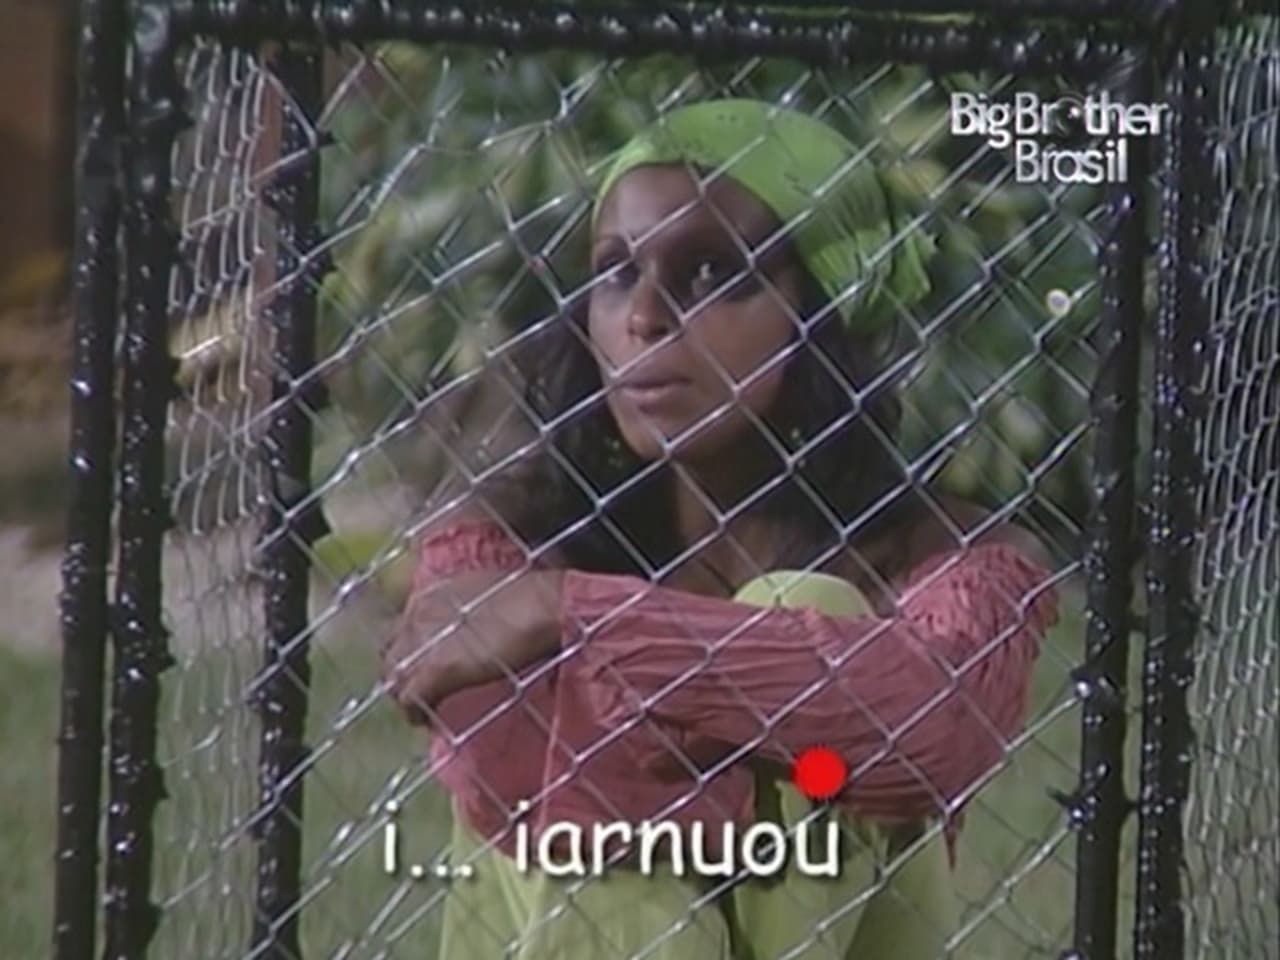 Big Brother Brasil - Season 4 Episode 74 : Episode 74